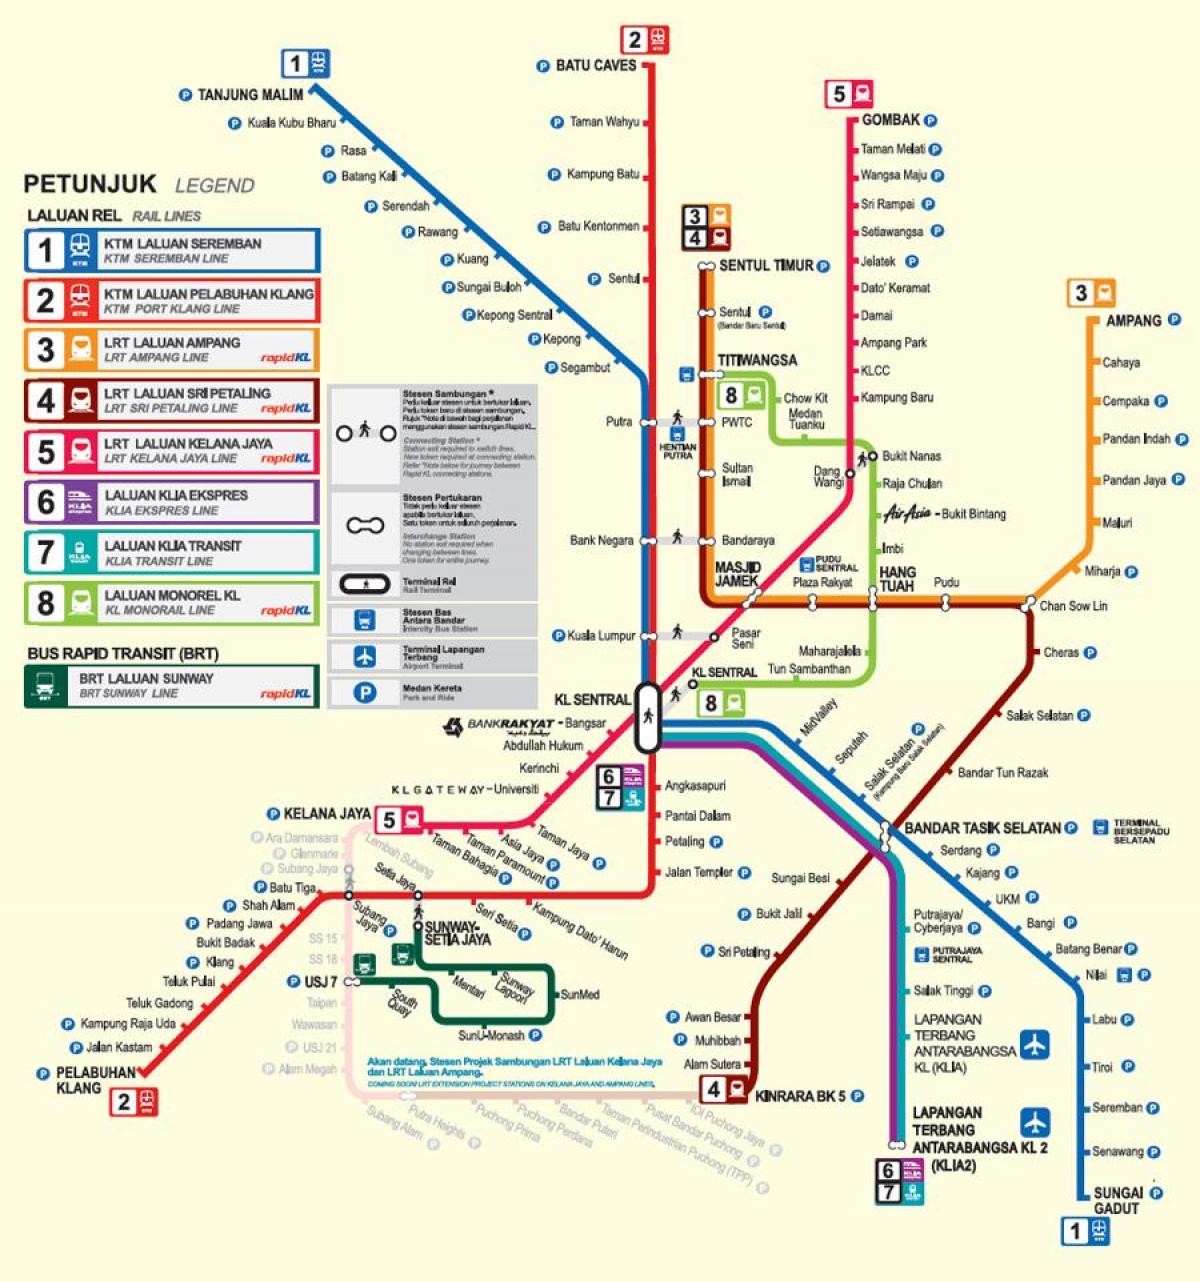 куала лумпур lrt мапата 2016 година